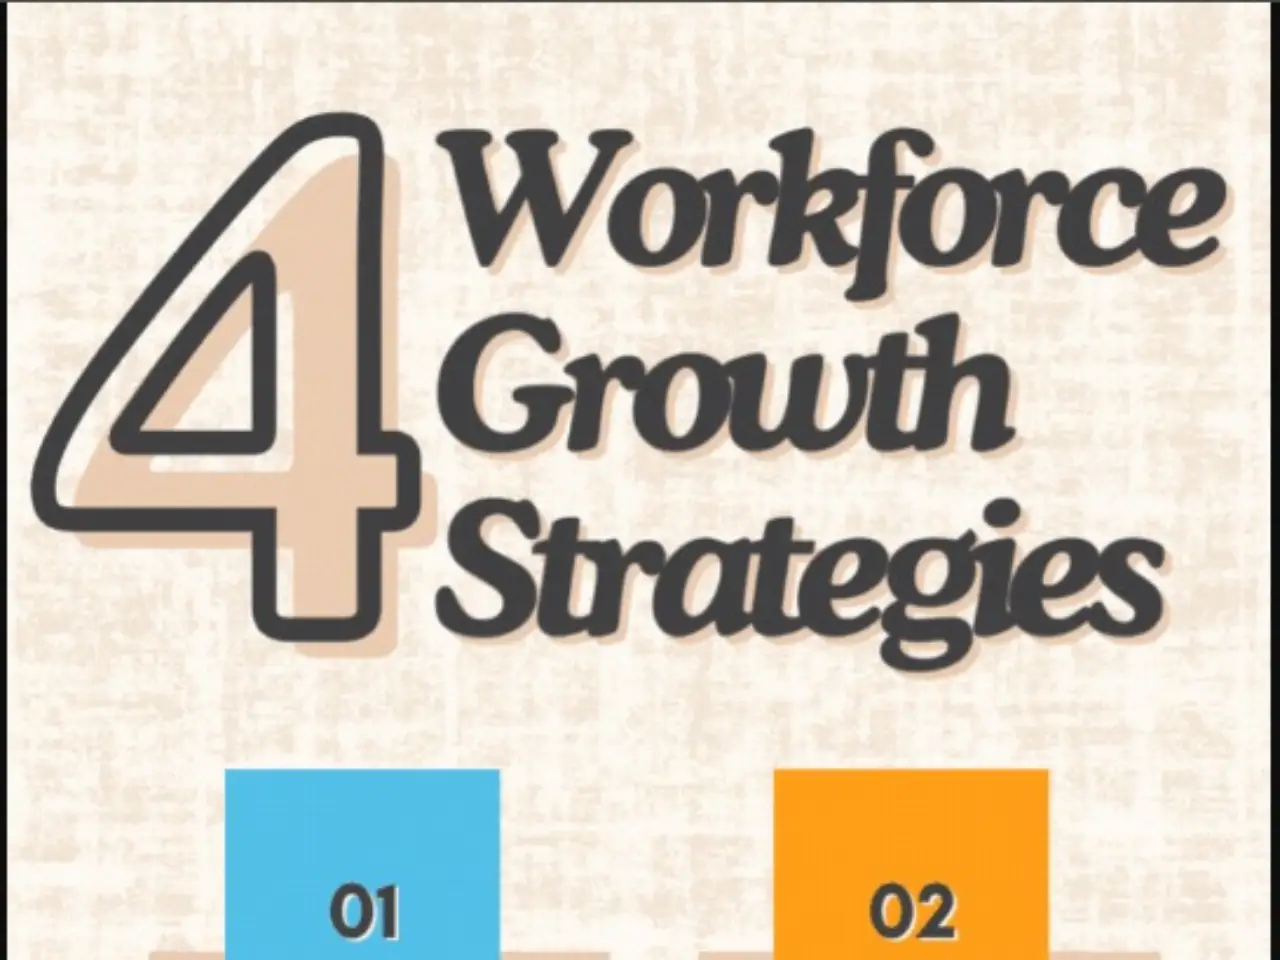 Workforce Growth Strategies